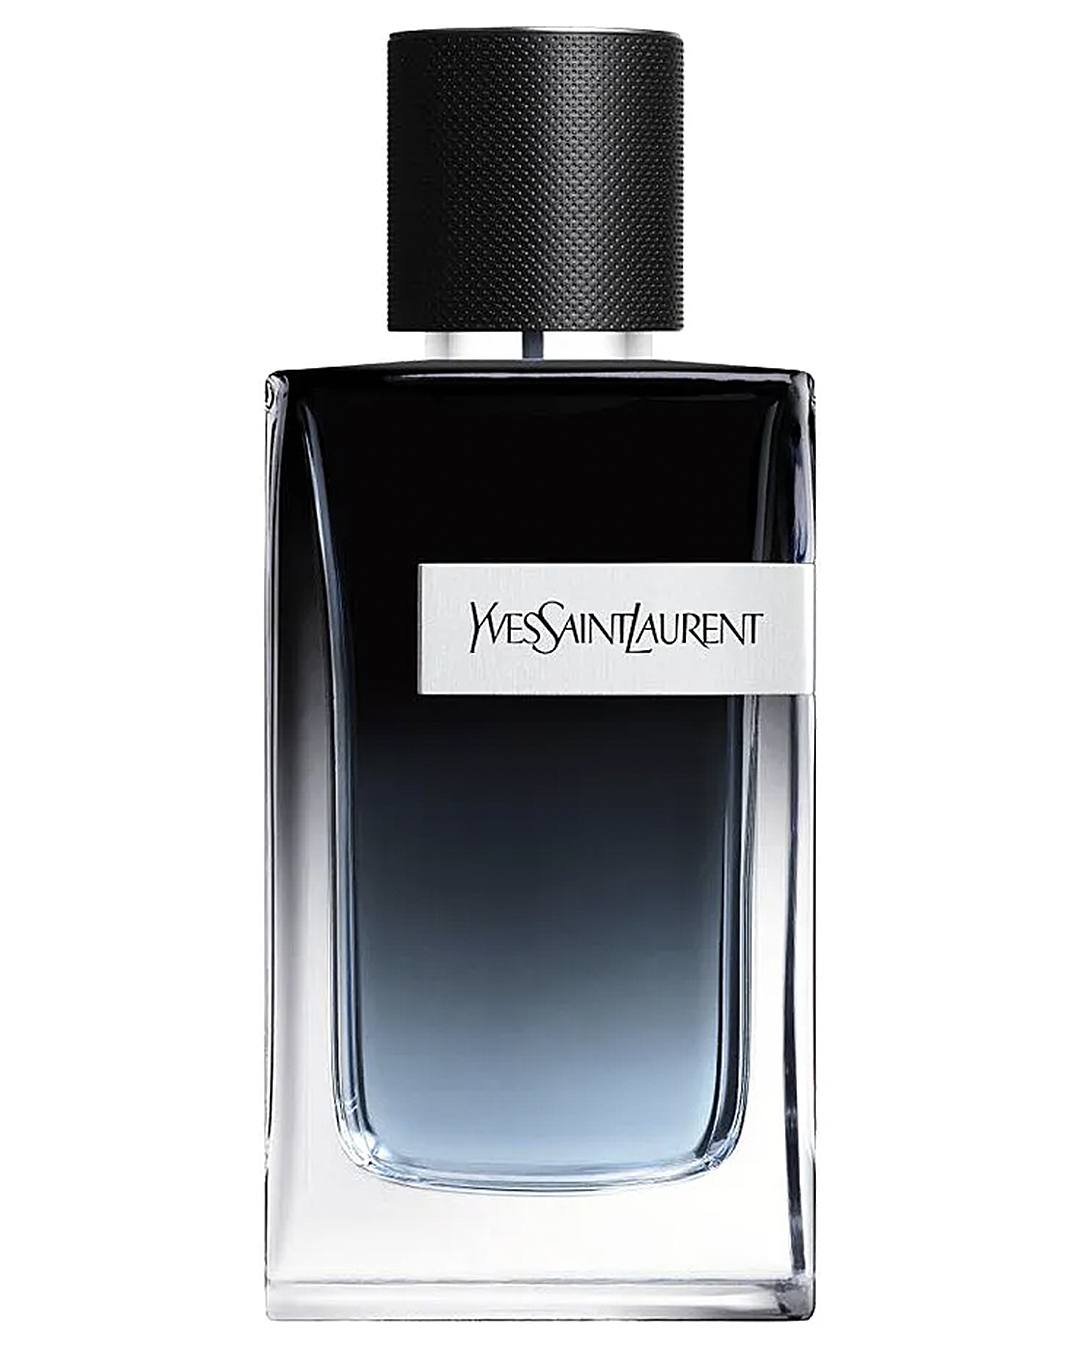 A classy Yves Saint Laurent Eau de Parfum.